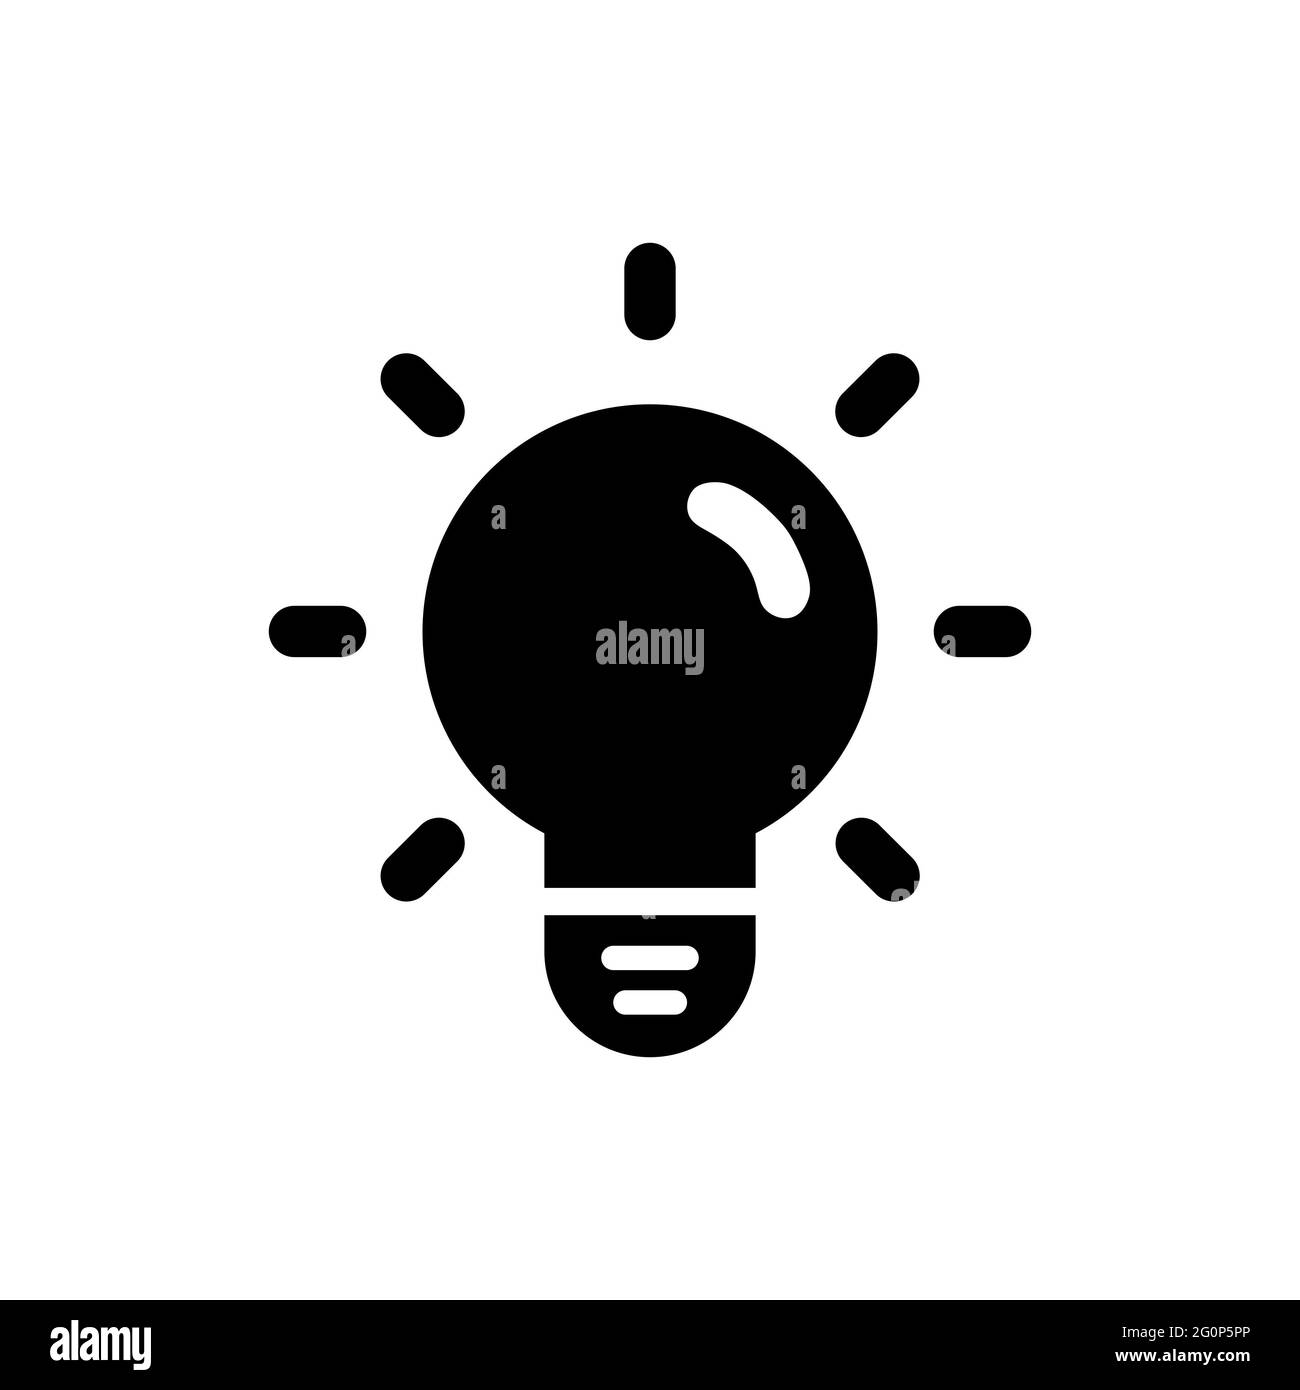 Immagine della lampadina che simboleggia l'idea, l'innovazione, il brainstorming, la creatività, l'ispirazione, miglioramento. Foto Stock